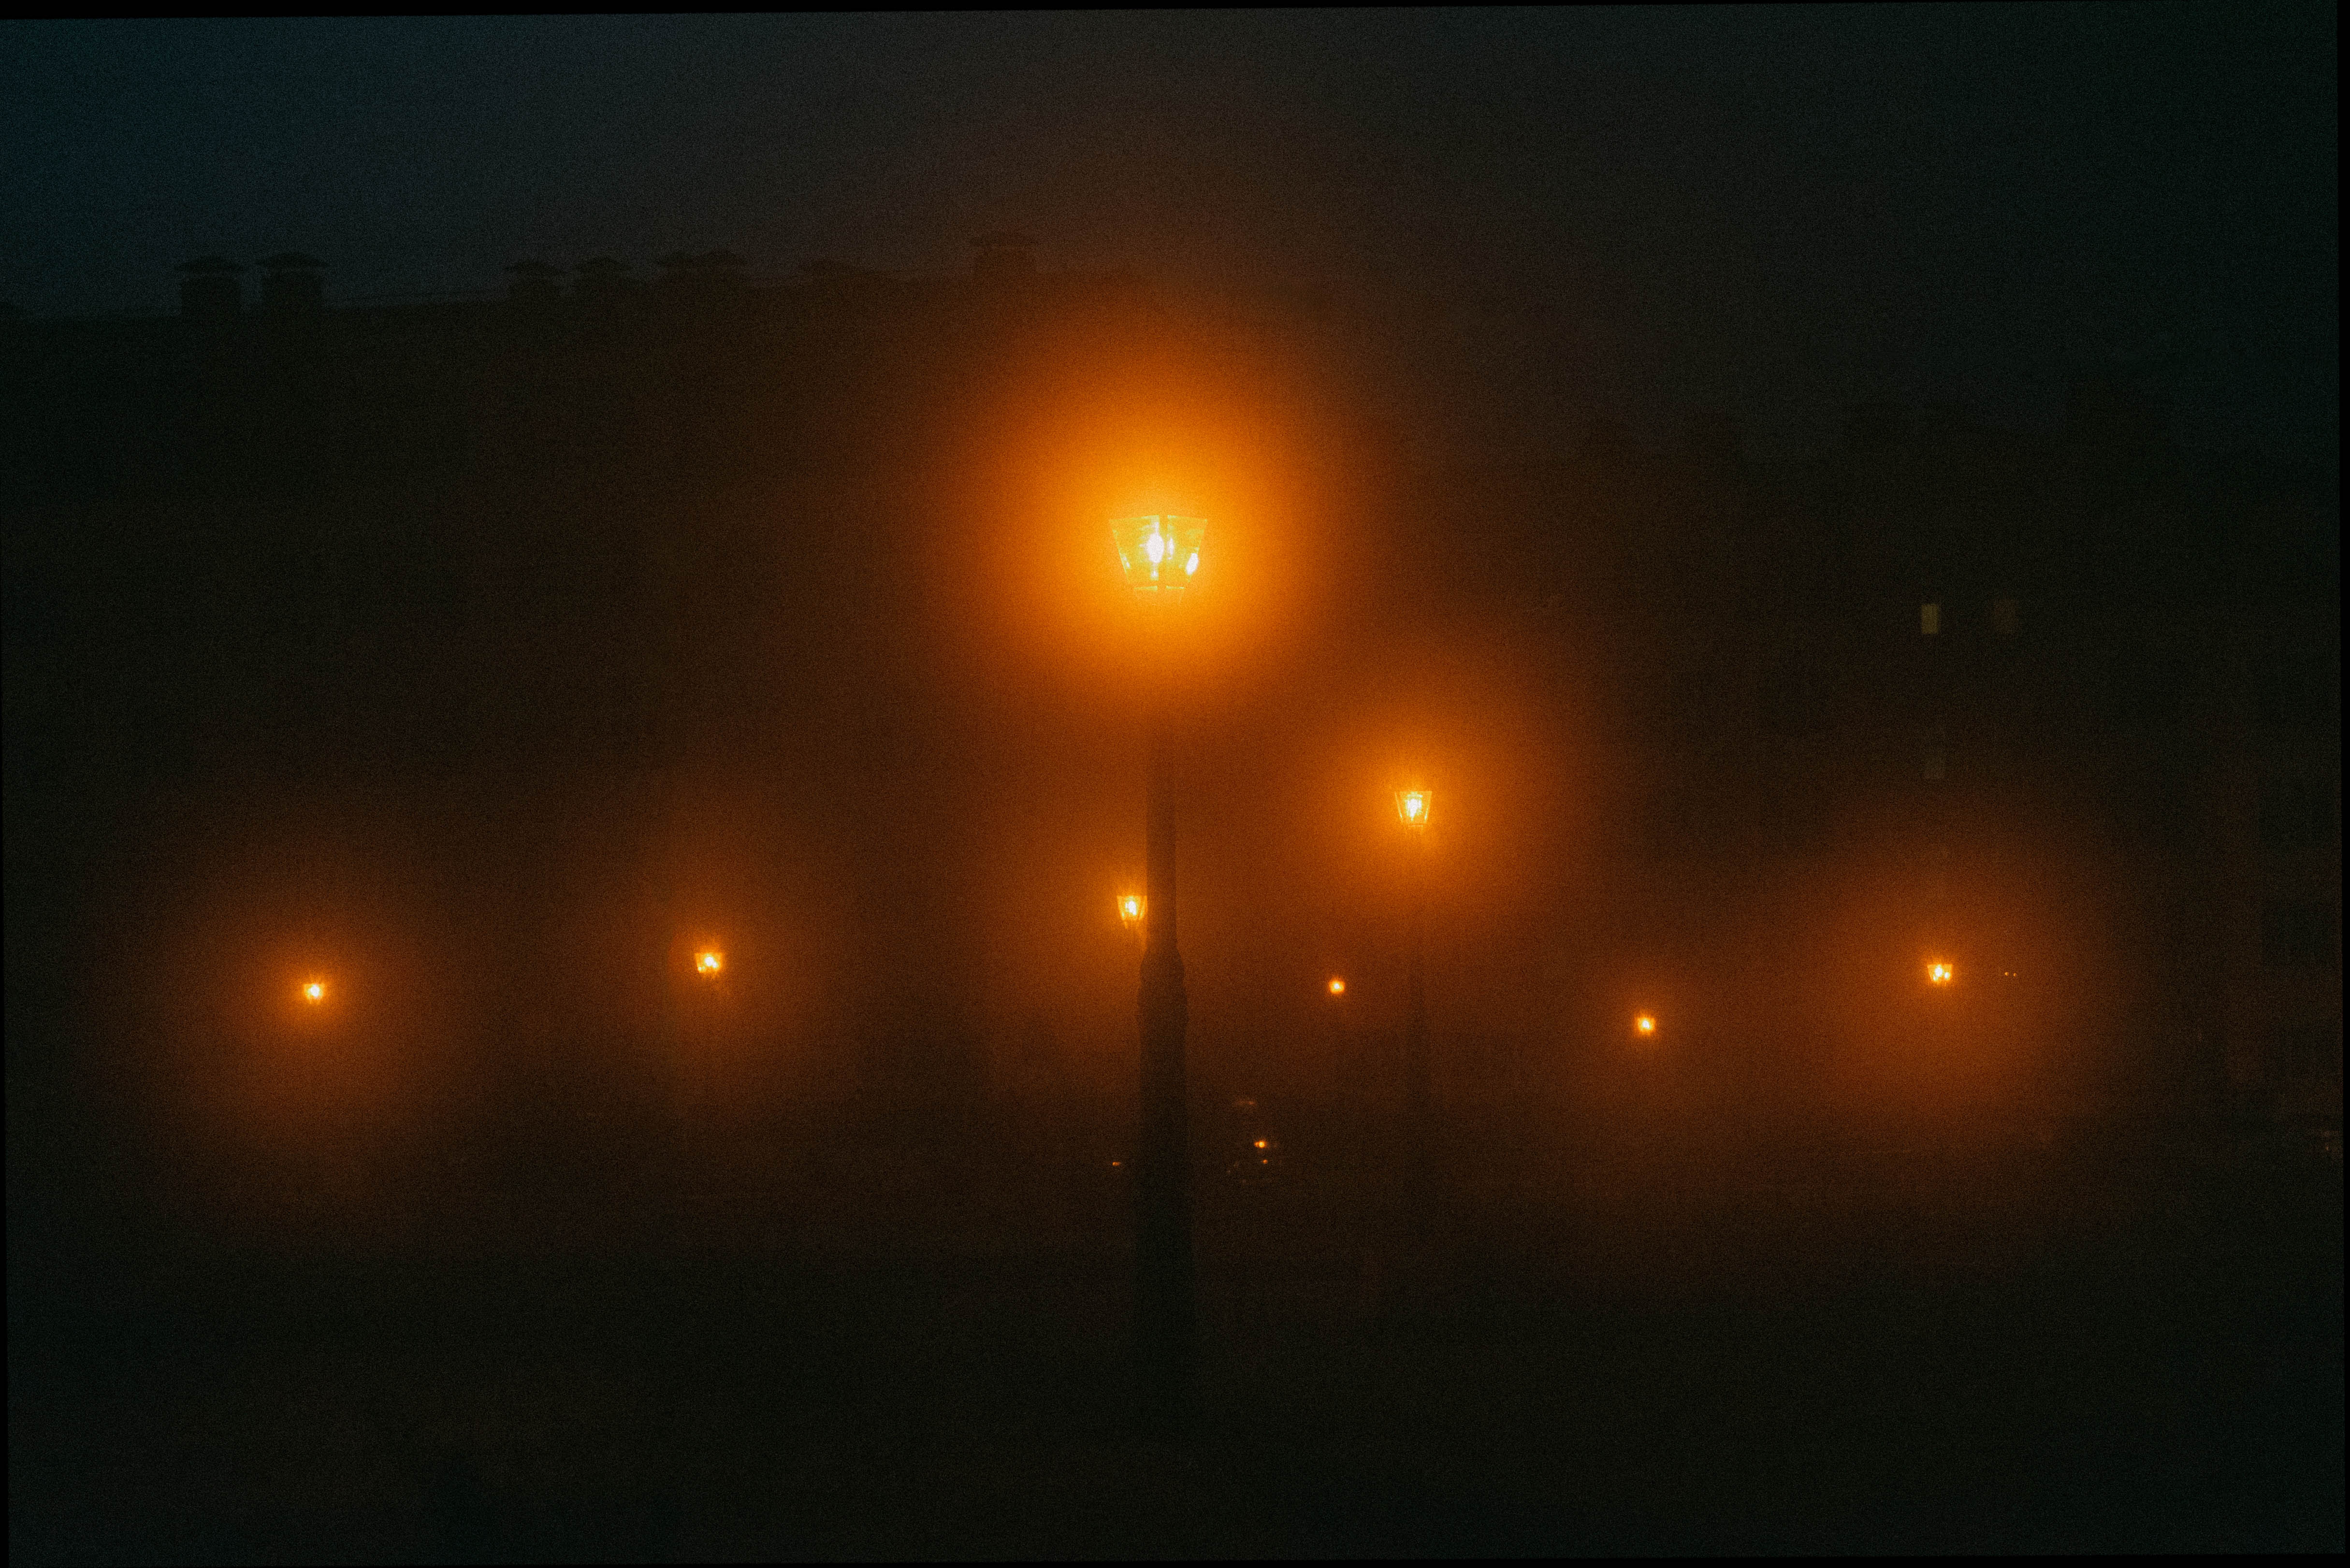 туман, фонари, осень, ночь, стрит фото, уличная фотография, пейзаж, двор, Жирнов Андрей